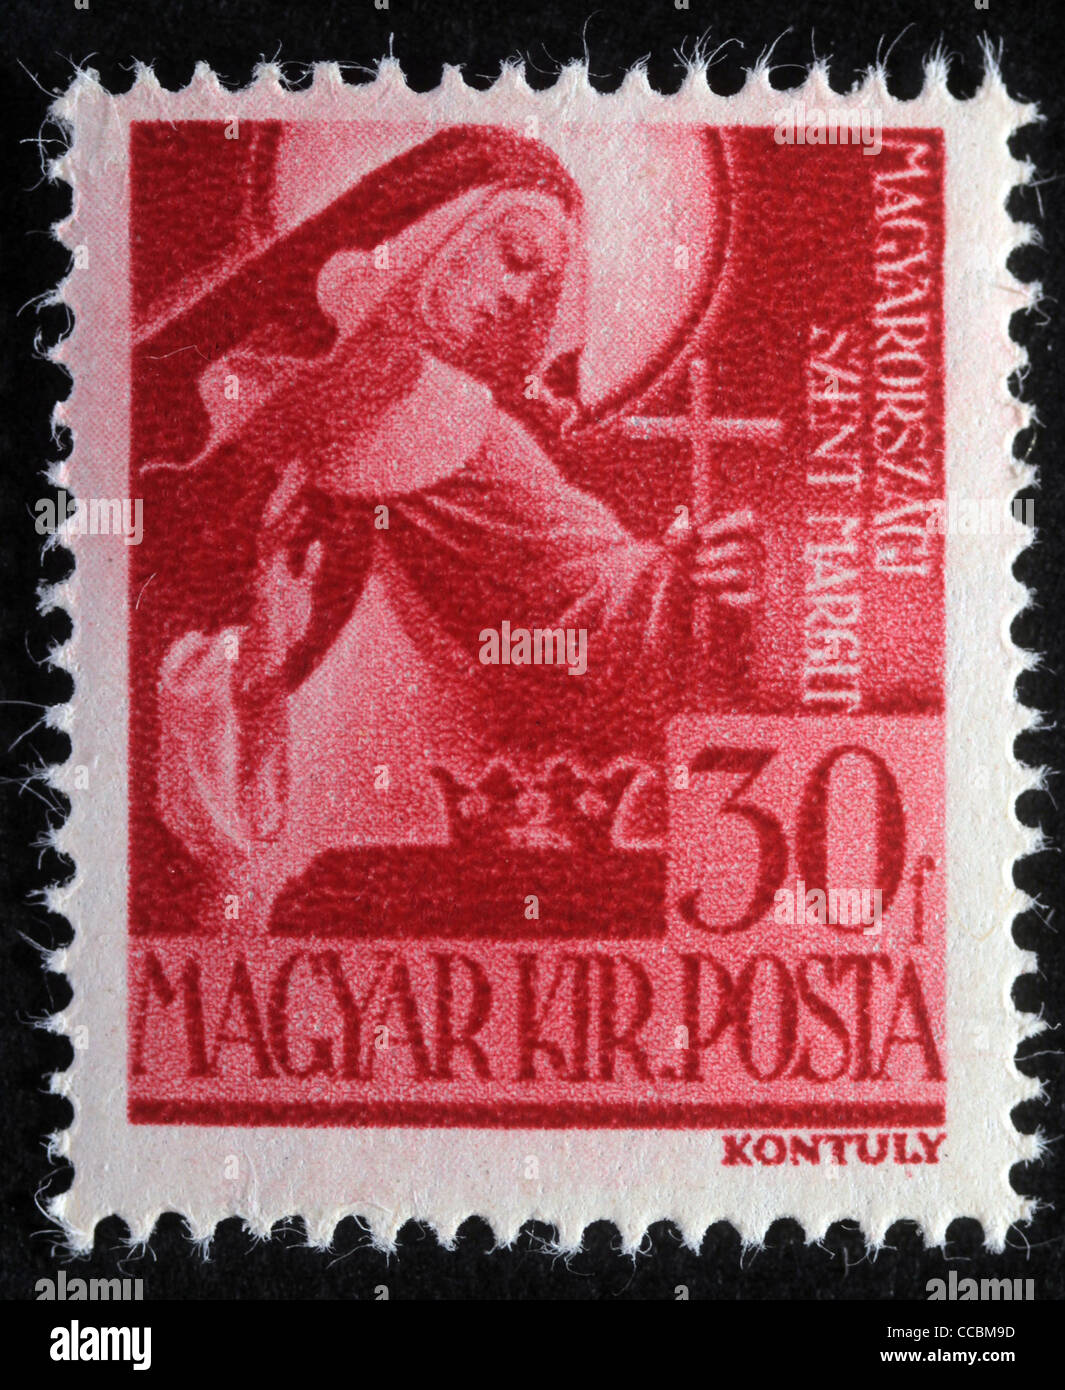 Timbres en Hongrie montre Sainte Marguerite de Hongrie, vers 1944 Banque D'Images